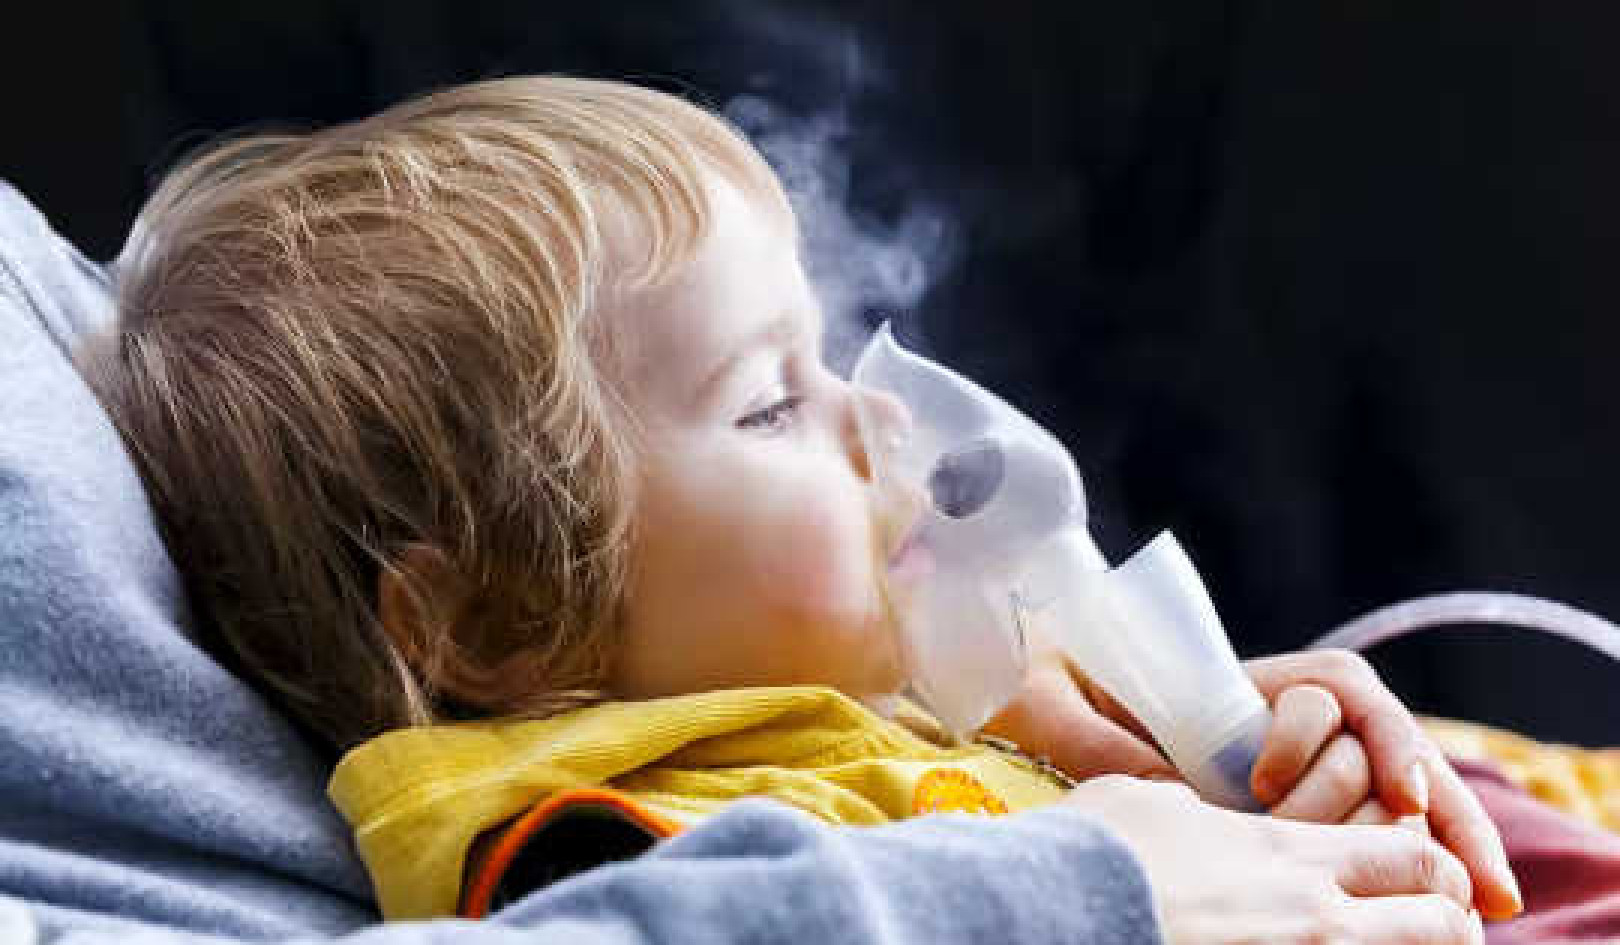 Deze 3 dingen in huizen tonen de sterkste banden met astma